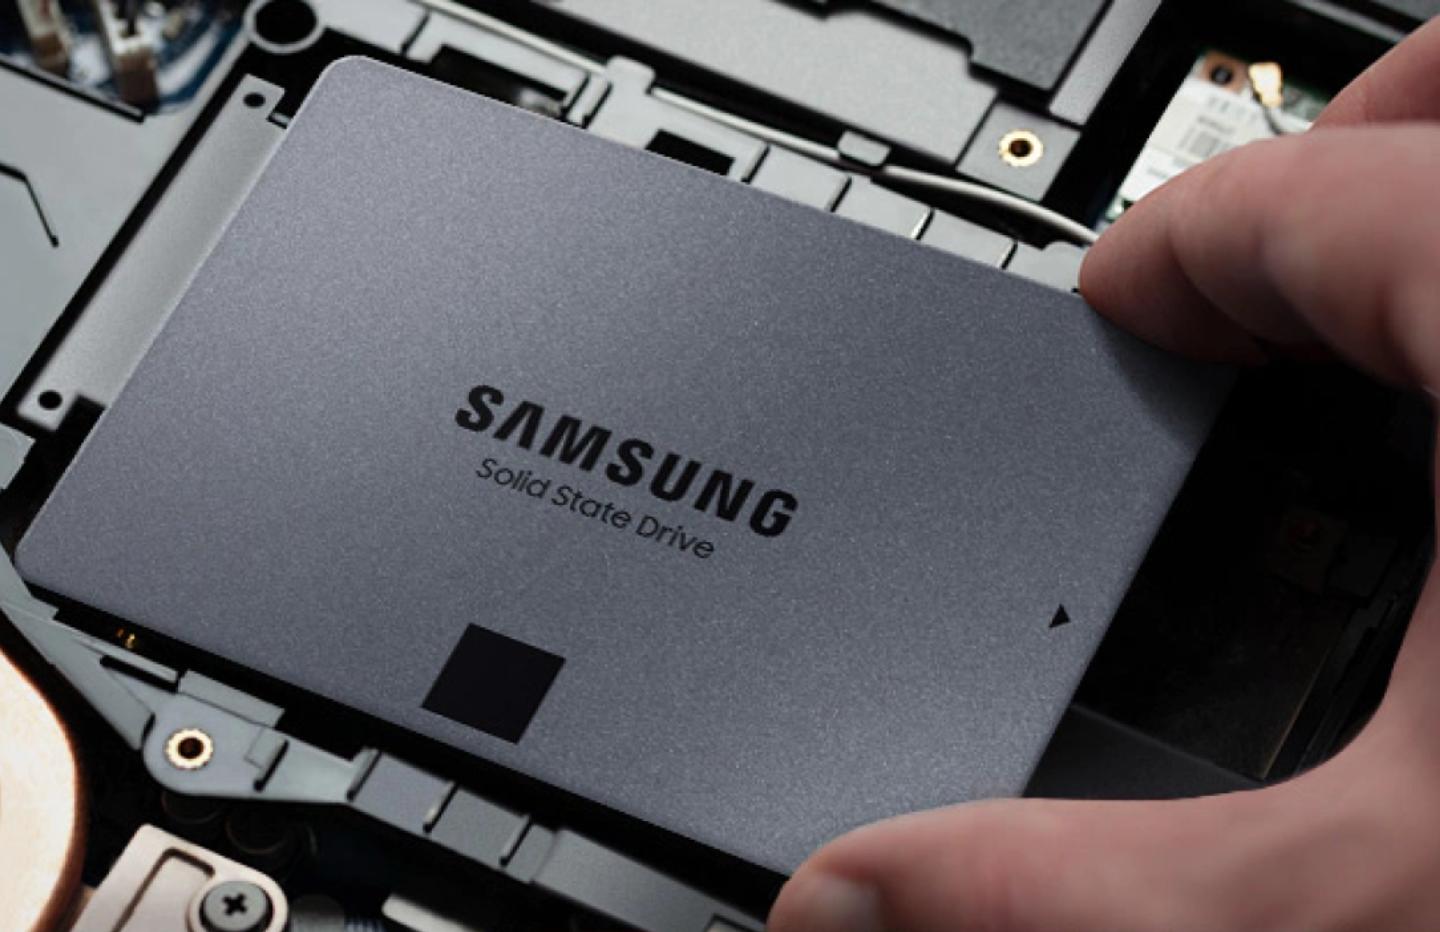 Le nouveau SSD interne Samsung 870 EVO 1 To à 99 €